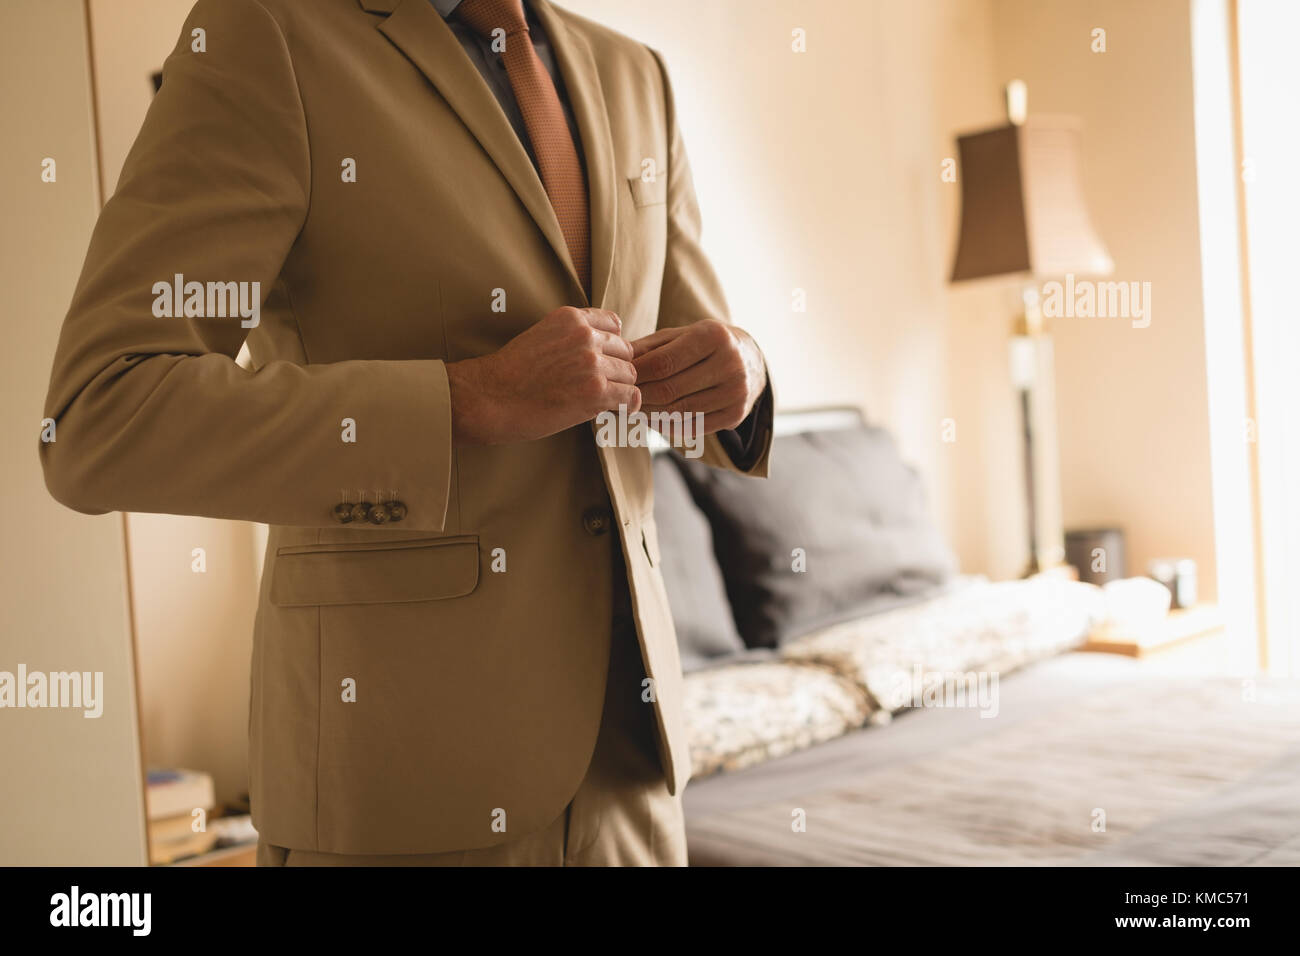 Man wearing his blazer in bedroom Stock Photo